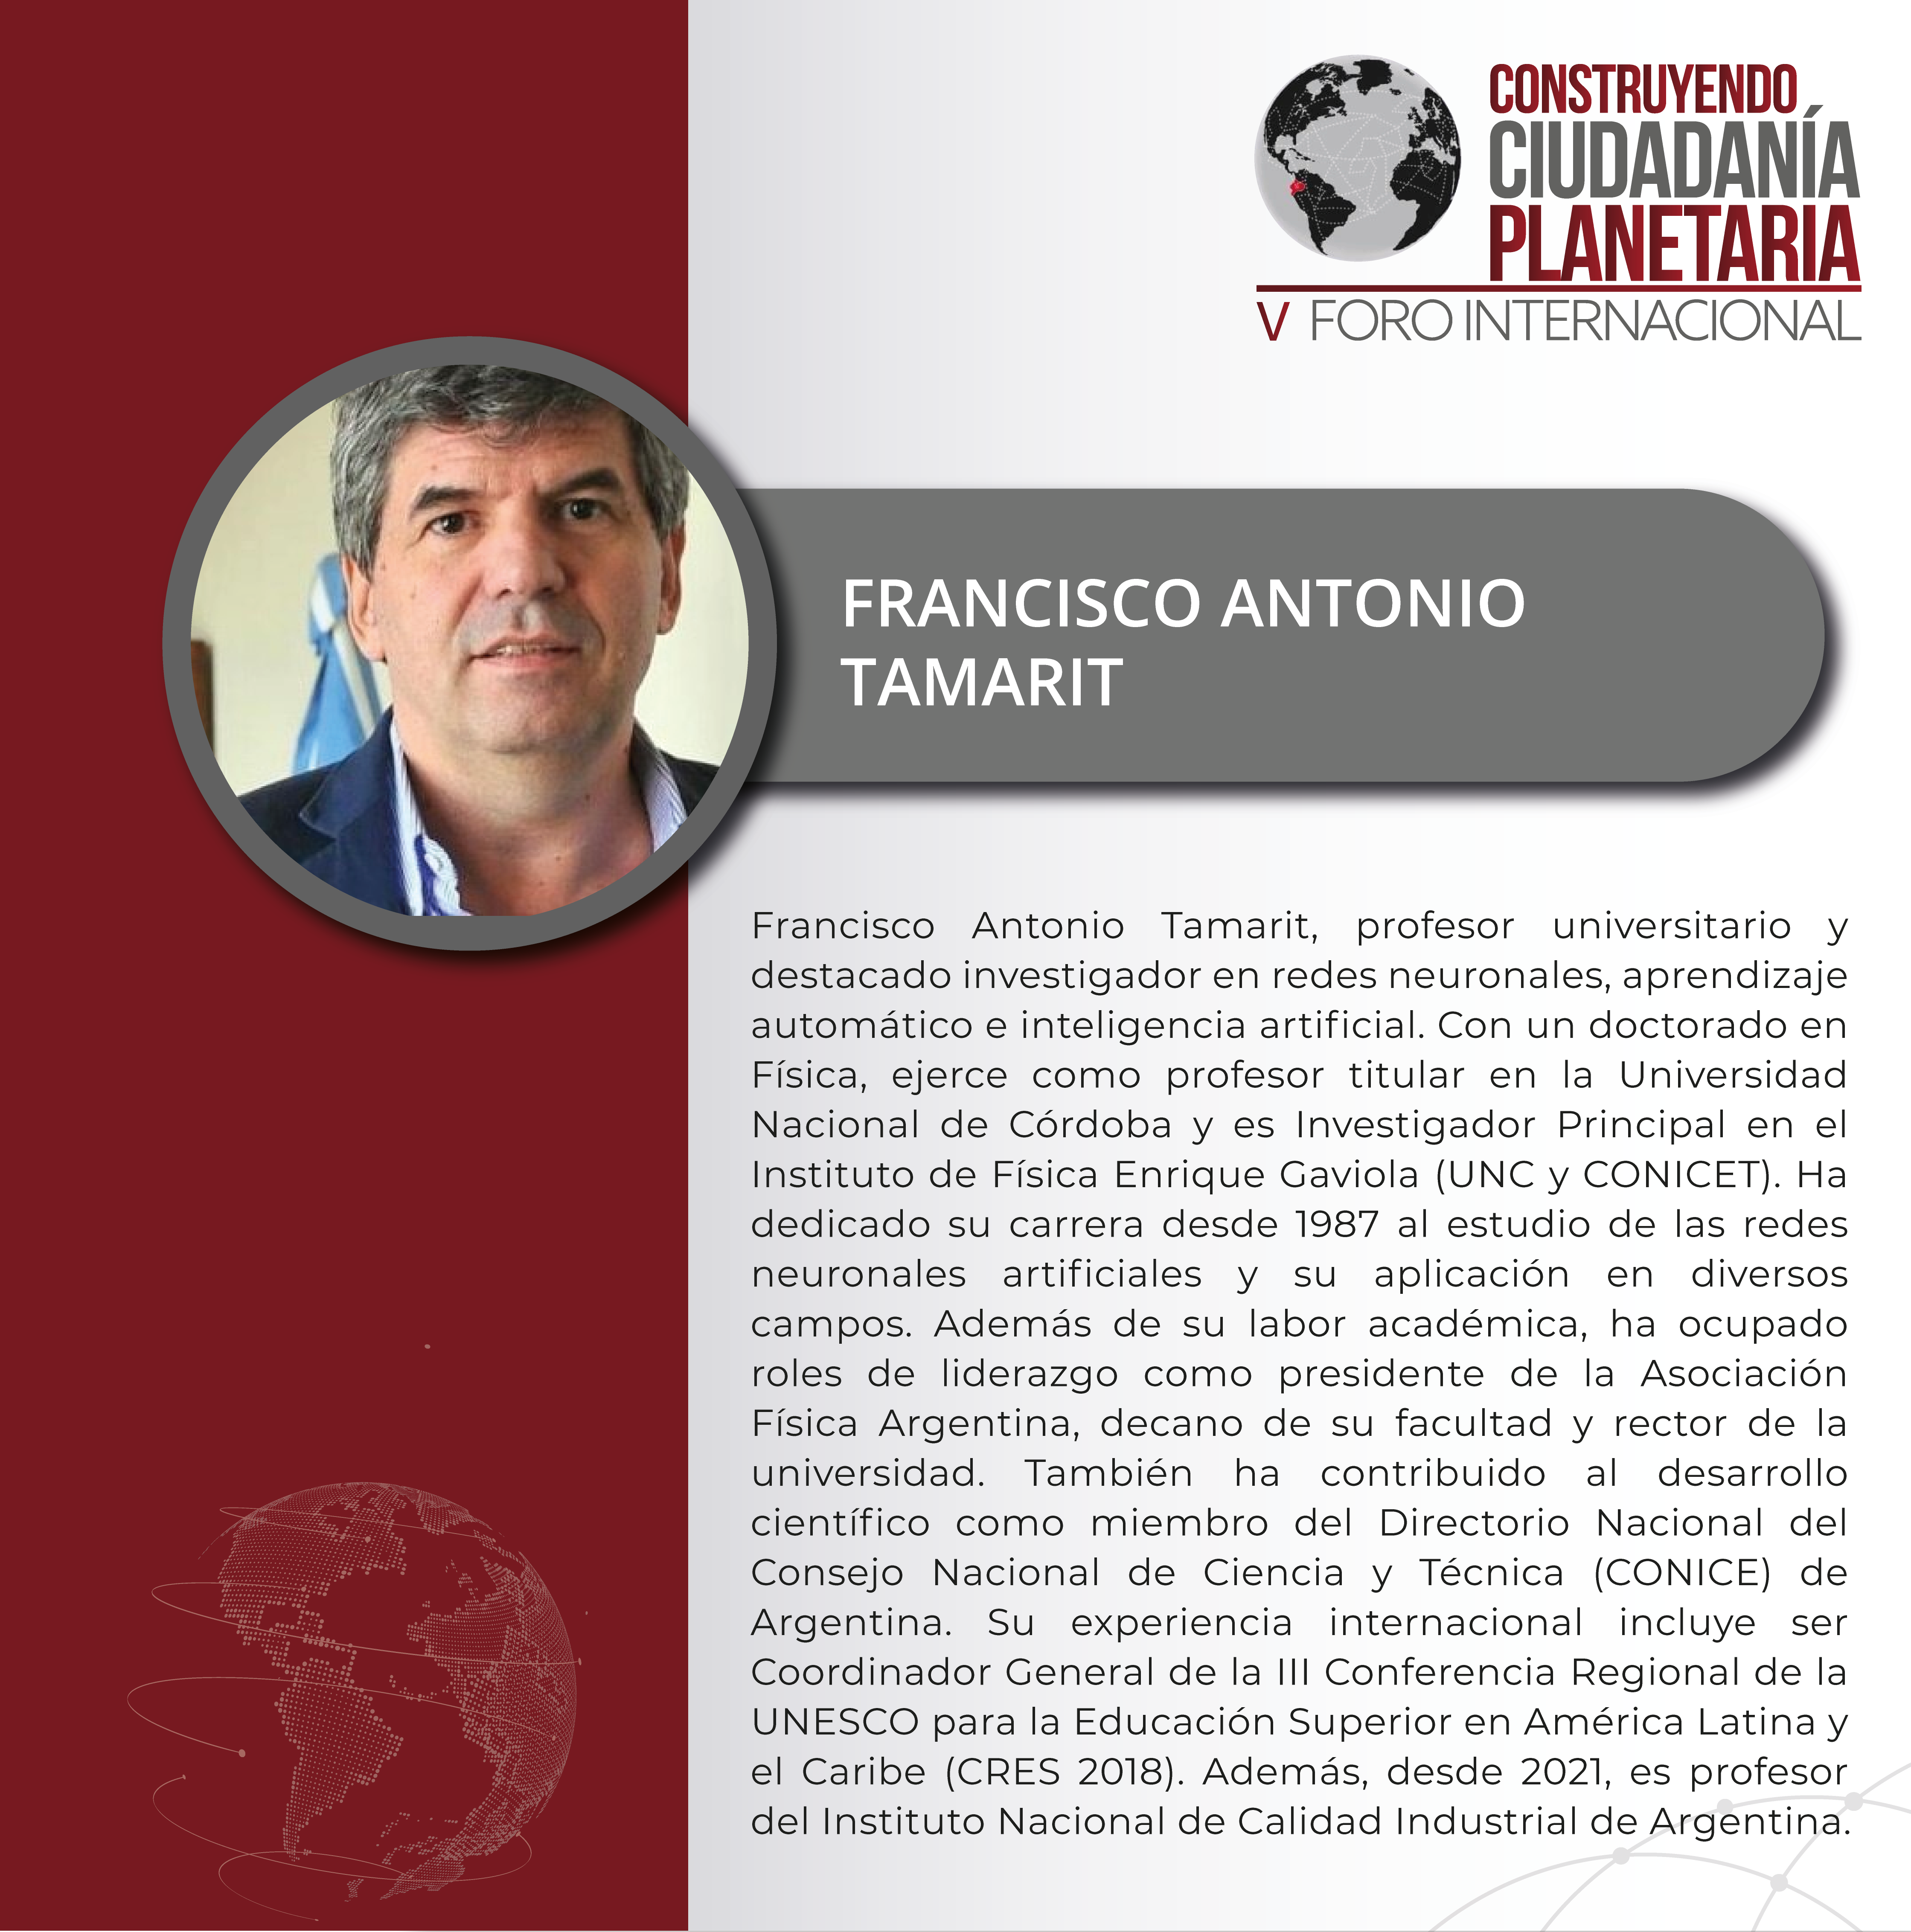 FRANCISCO ANTONIO TAMARIT